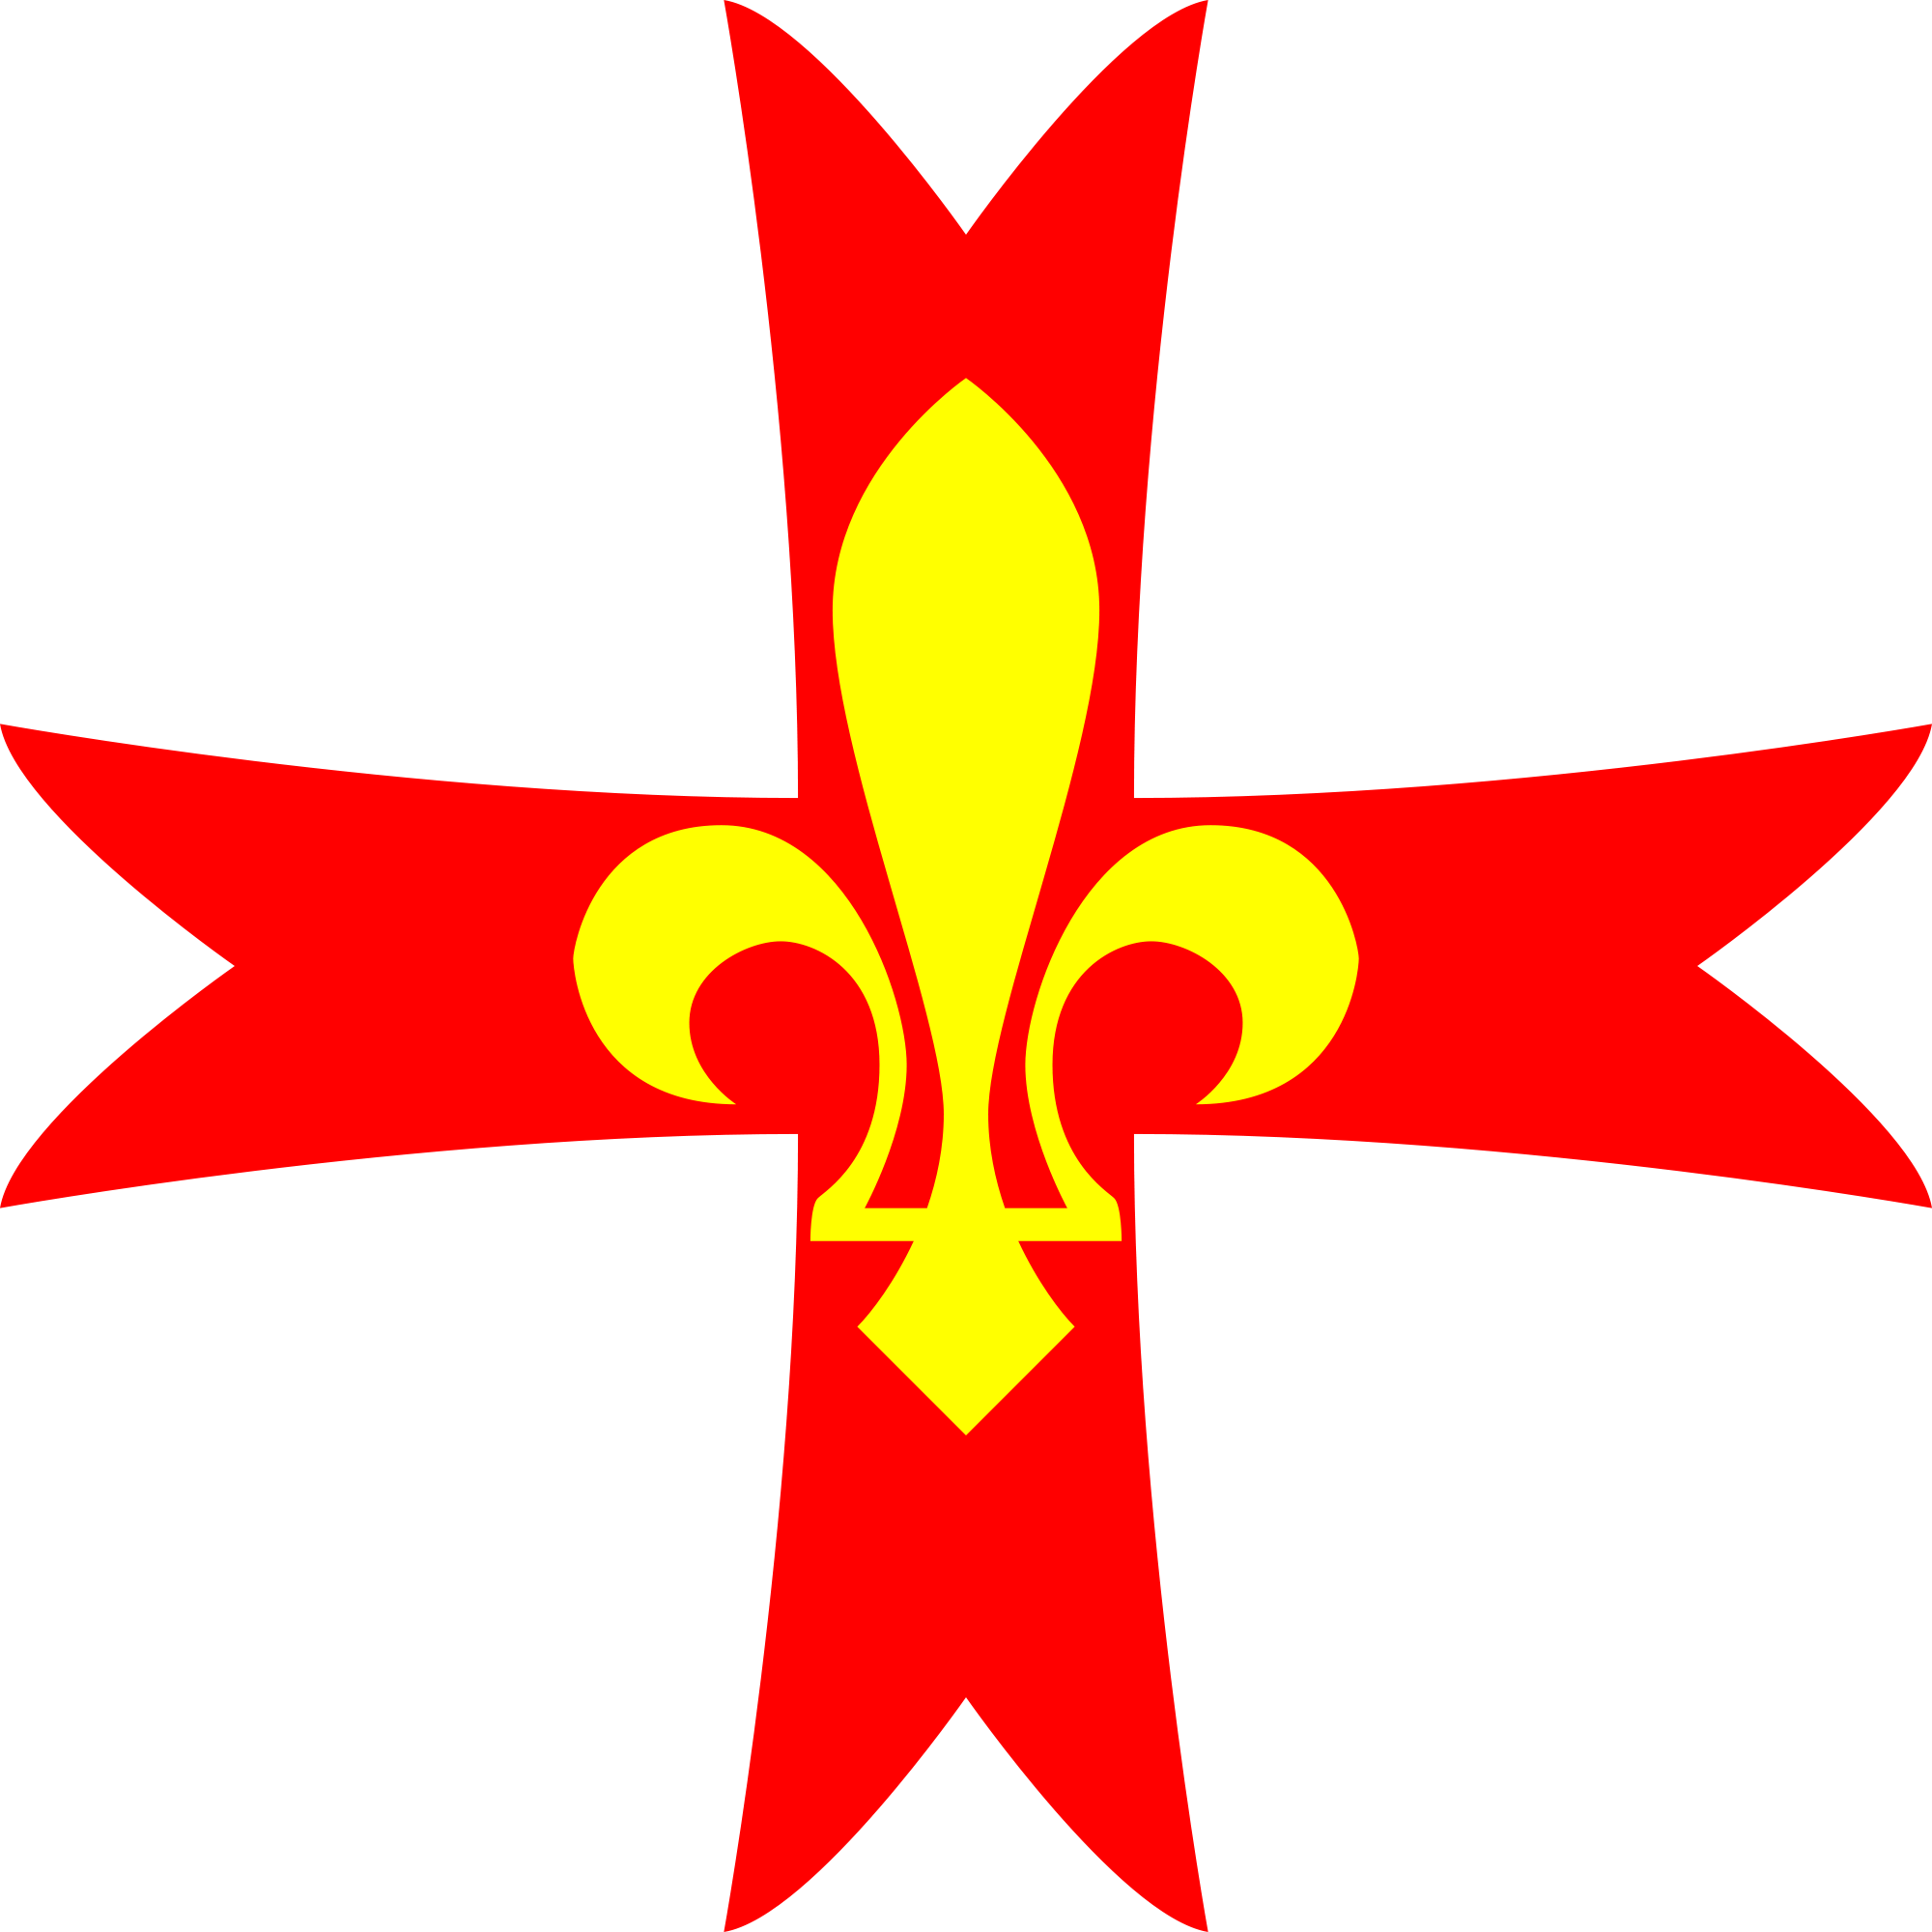 Association Des Guides Et Scouts D'europe (2000x2000)